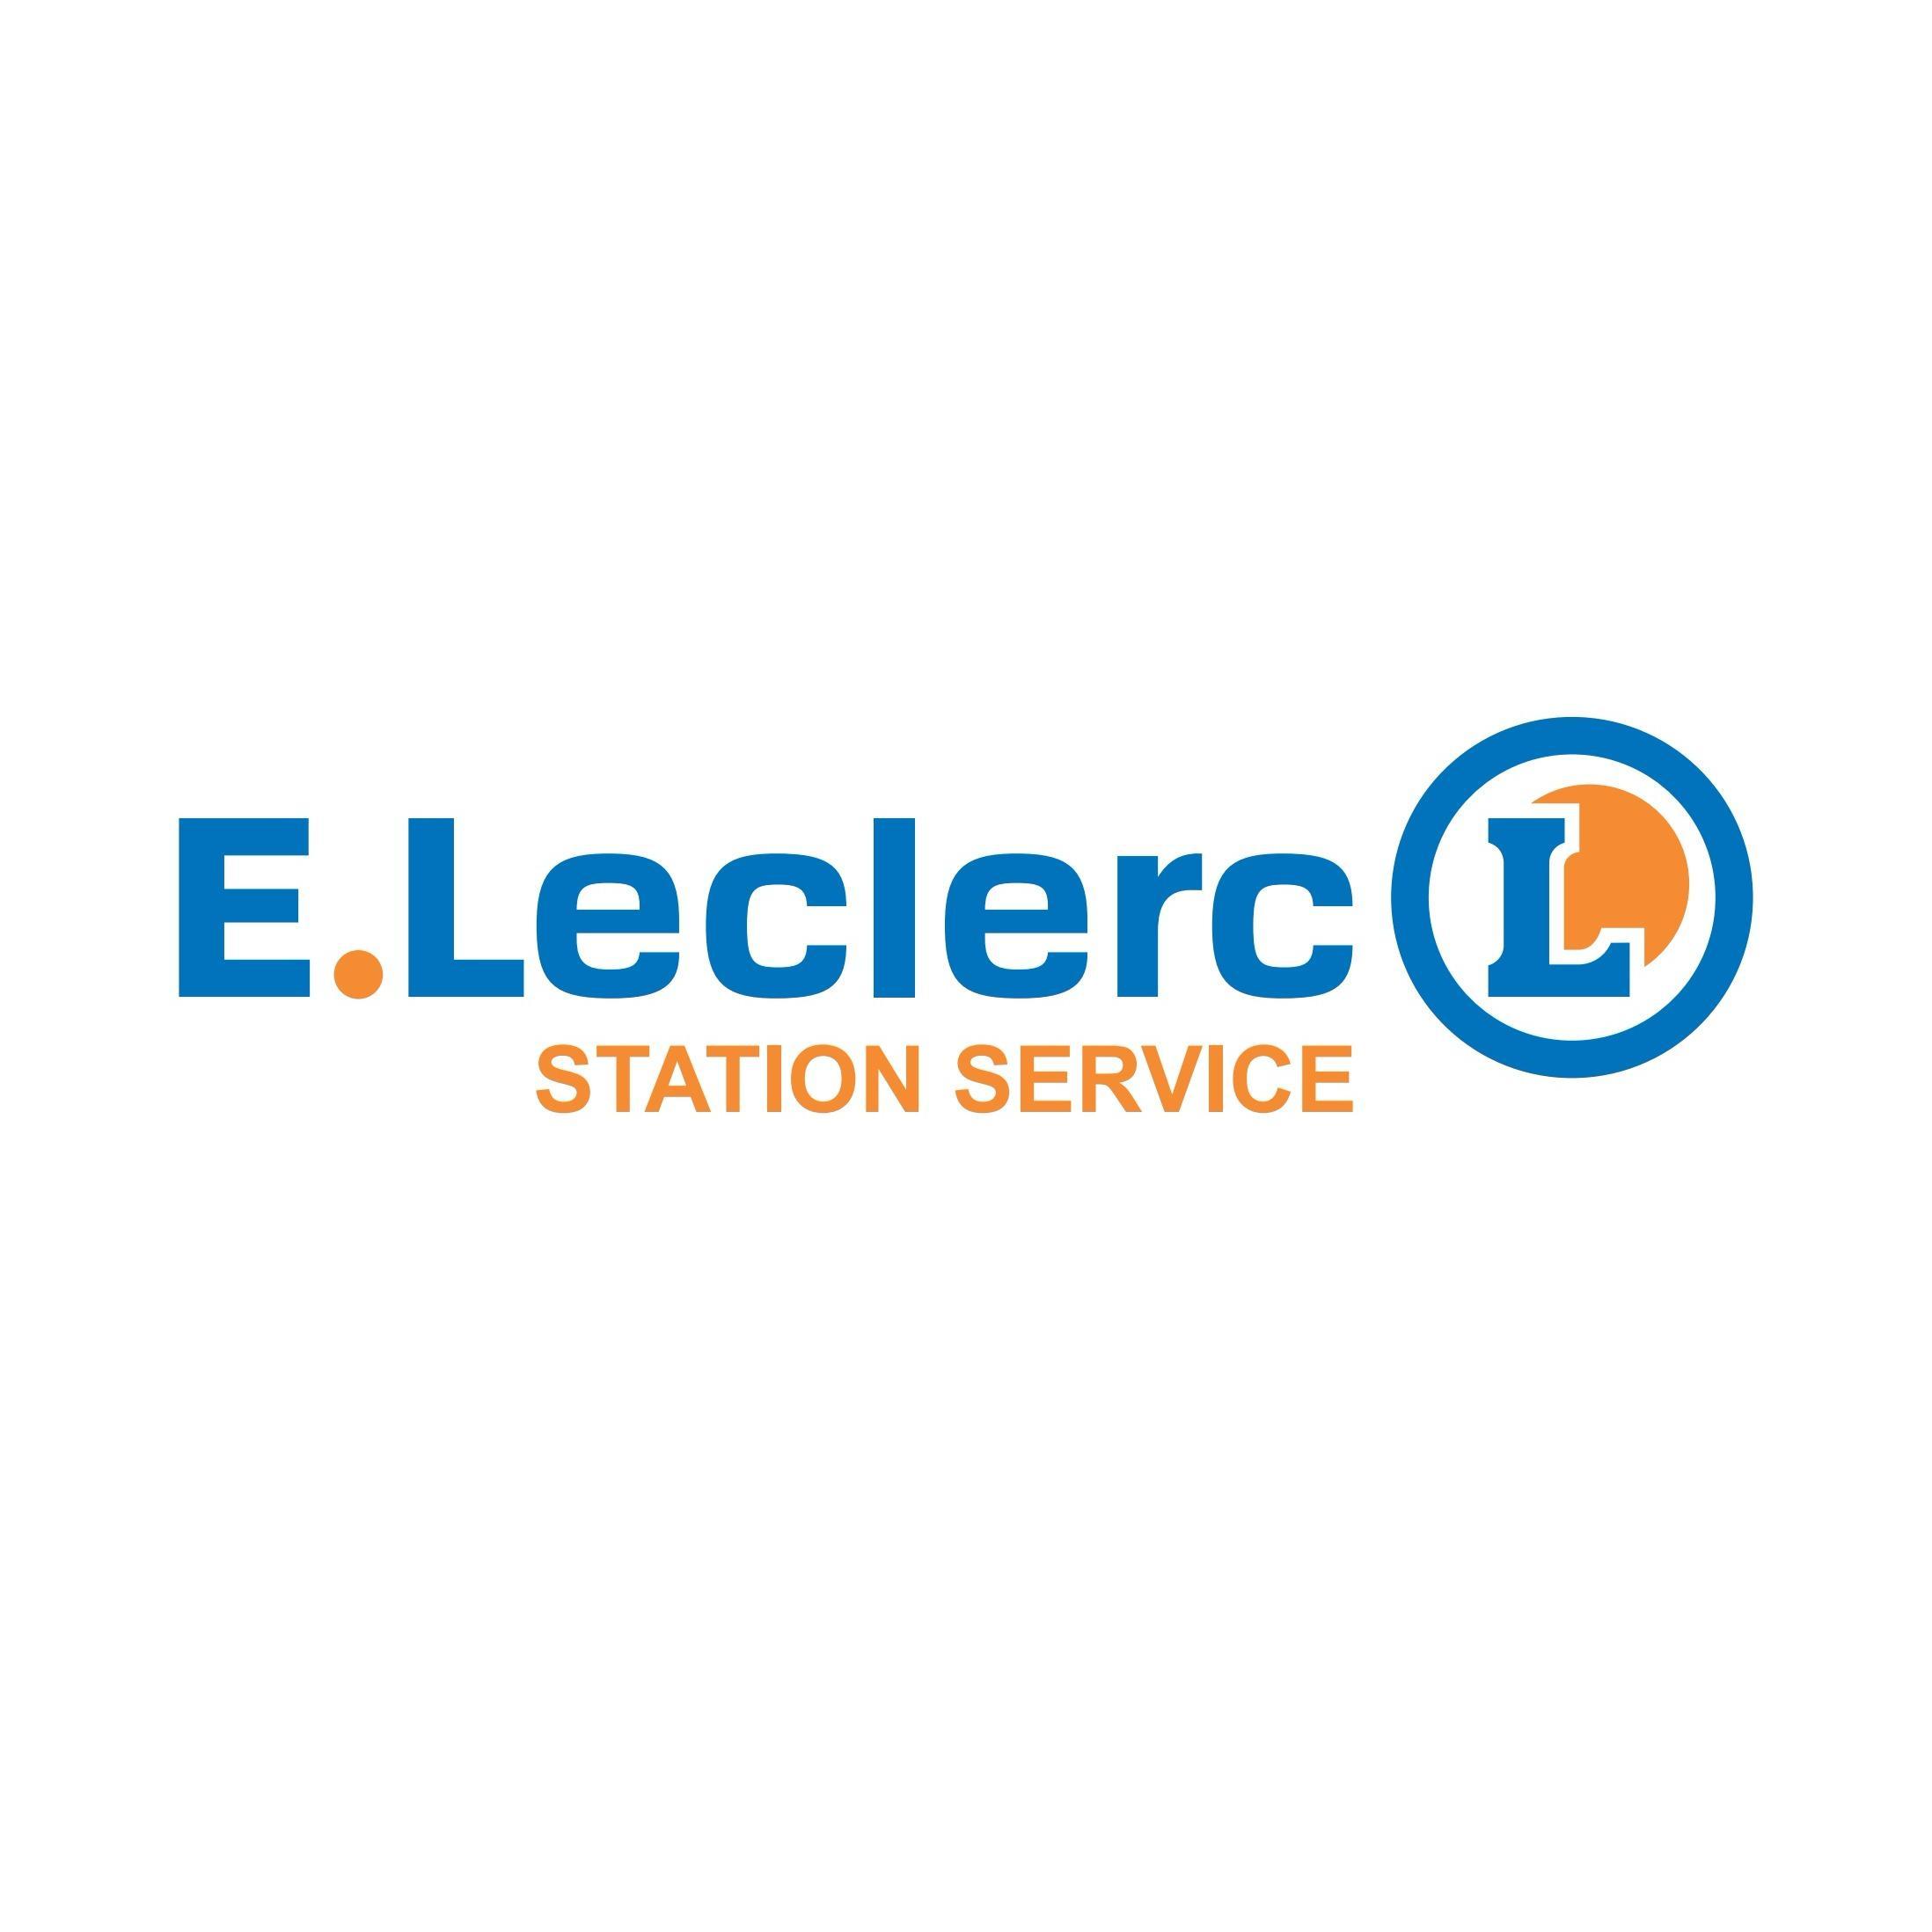 E.leclerc Station Service Carrières Sous Poissy